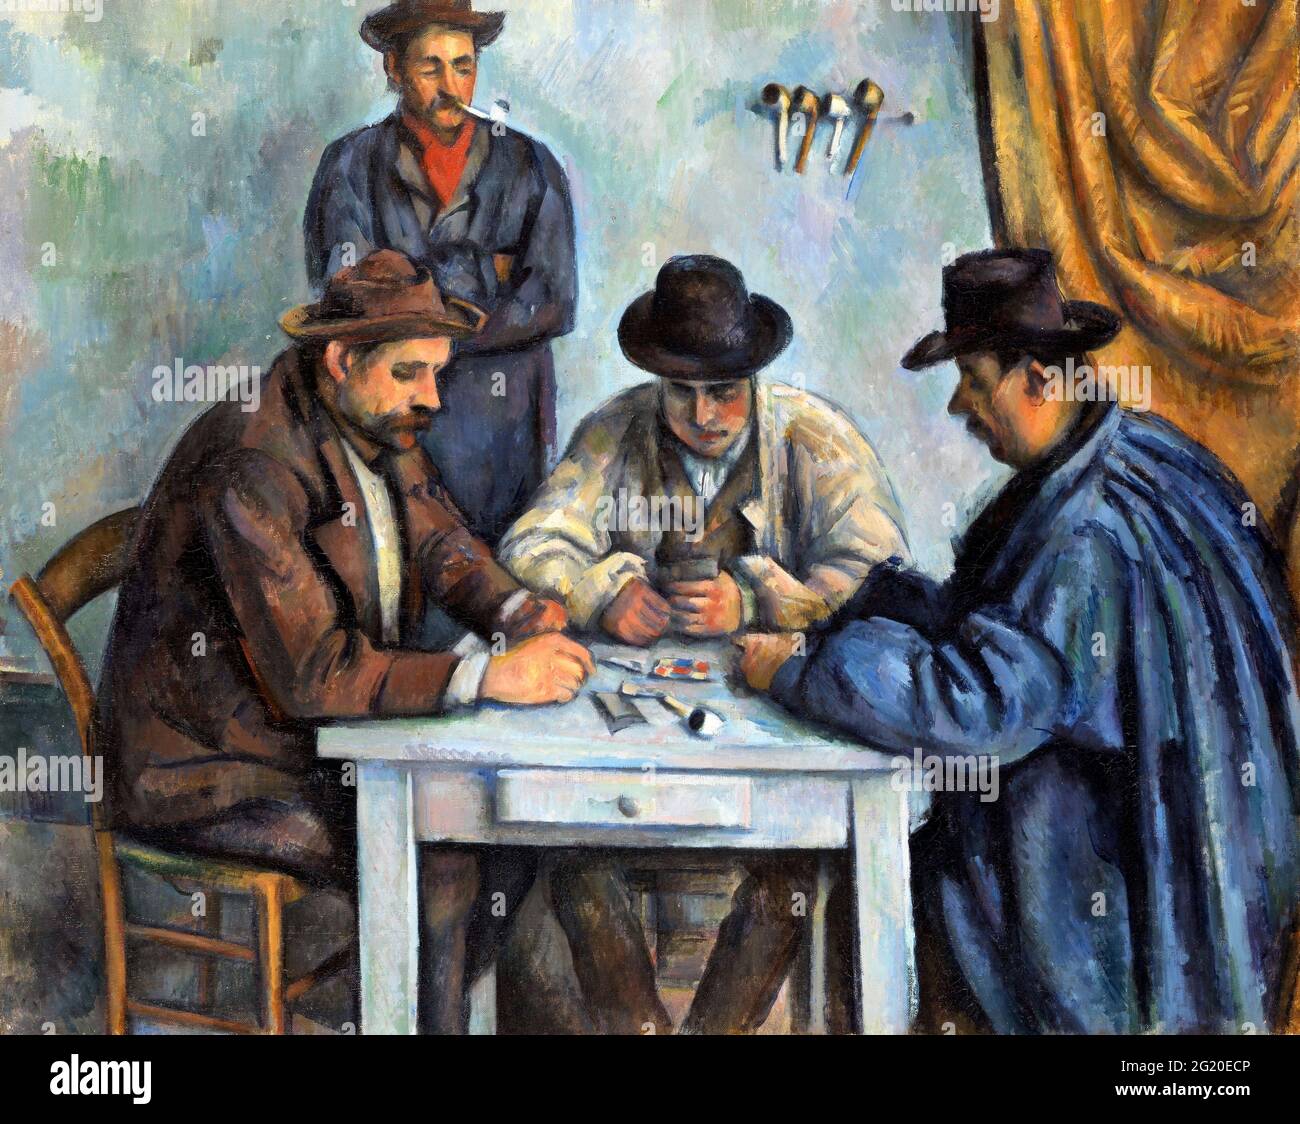 Les joueurs de cartes de Paul Cezanne (1839-1906), huile sur toile, c.1890-92 Banque D'Images